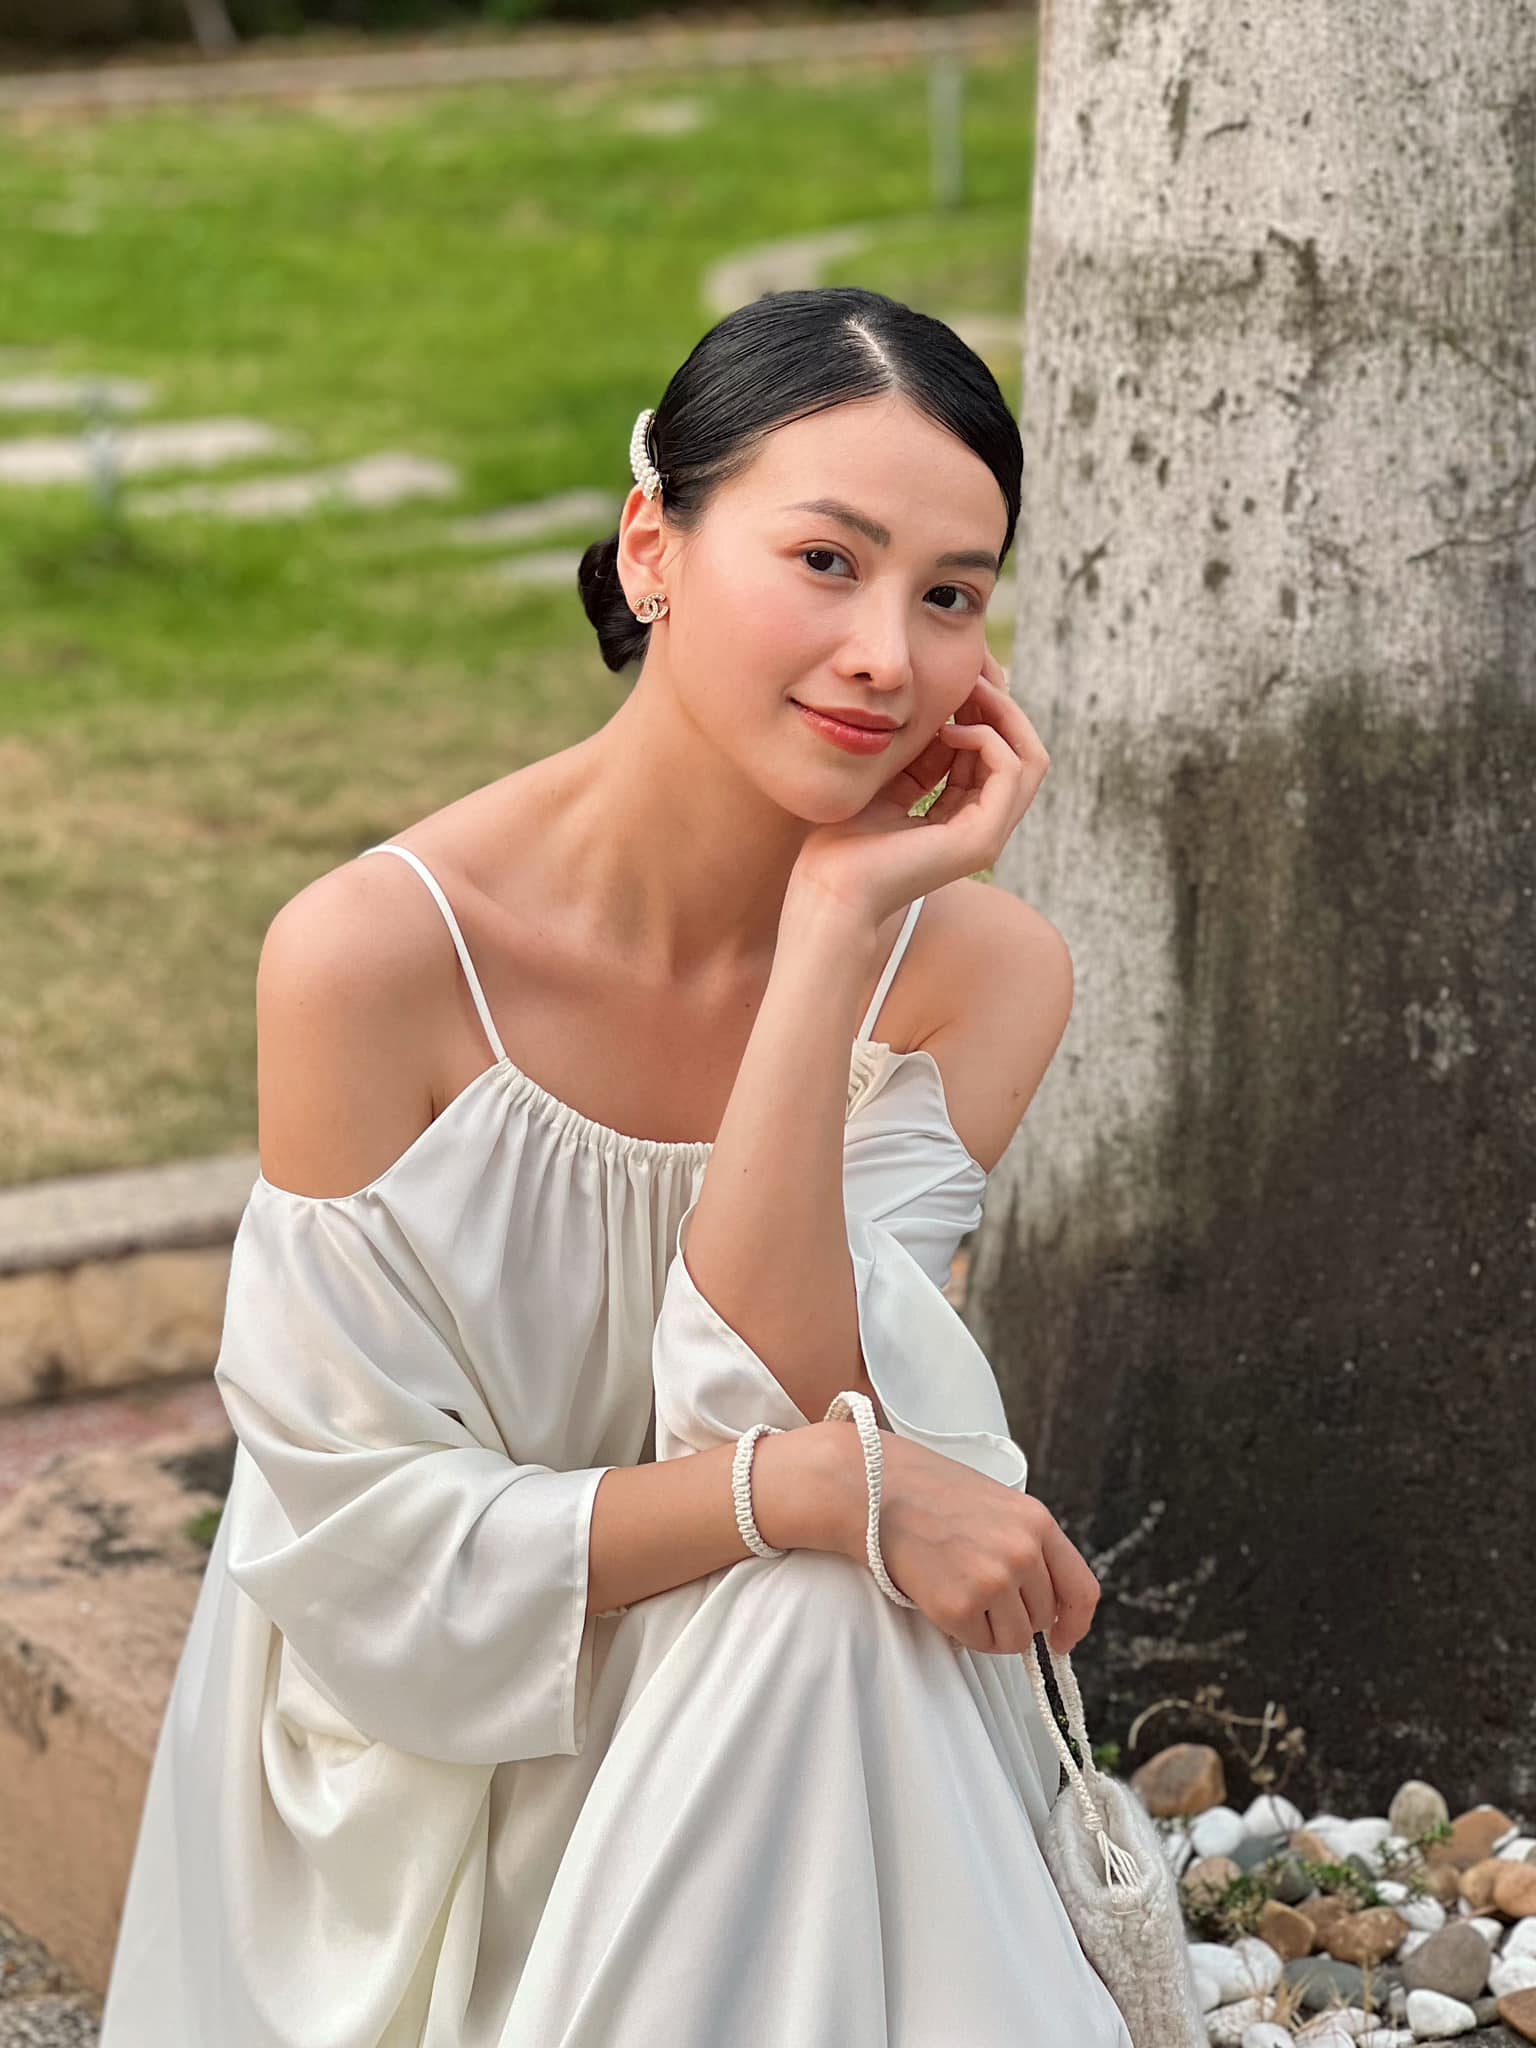 Hoa hậu Việt có 2 cơ ngơi ở tuổi 28: Penthouse sang xịn chưa choáng bằng toàn cảnh biệt thự tại khu nhà giàu - Ảnh 2.